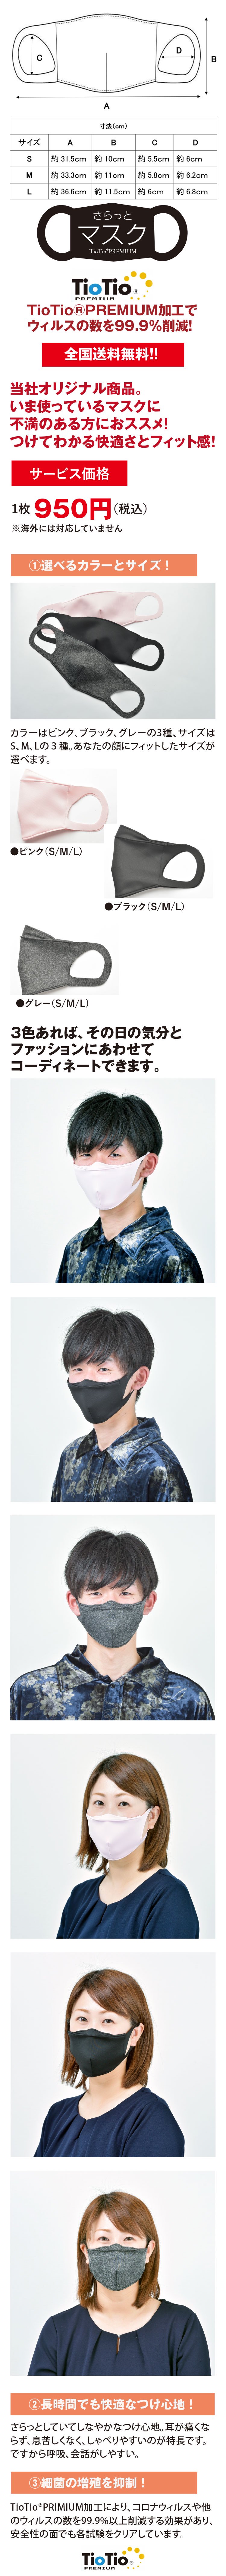 新型コロナ対策高機能マスク「さらっとマスク」グレーは天然成分を原料としたTioTio;PRIMIUM加工(ハイブリット触媒)で、消臭・抗菌防カビ・防汚(花粉)・ホルムアルデヒト対策の機能を有した当社オリジナル日本製の新マスク。S・M・Lの3サイズあり、顔にフィットするものをお選びいただけます。繰り返し洗濯しても効果が長時間期待できる安心安全のマスクです。